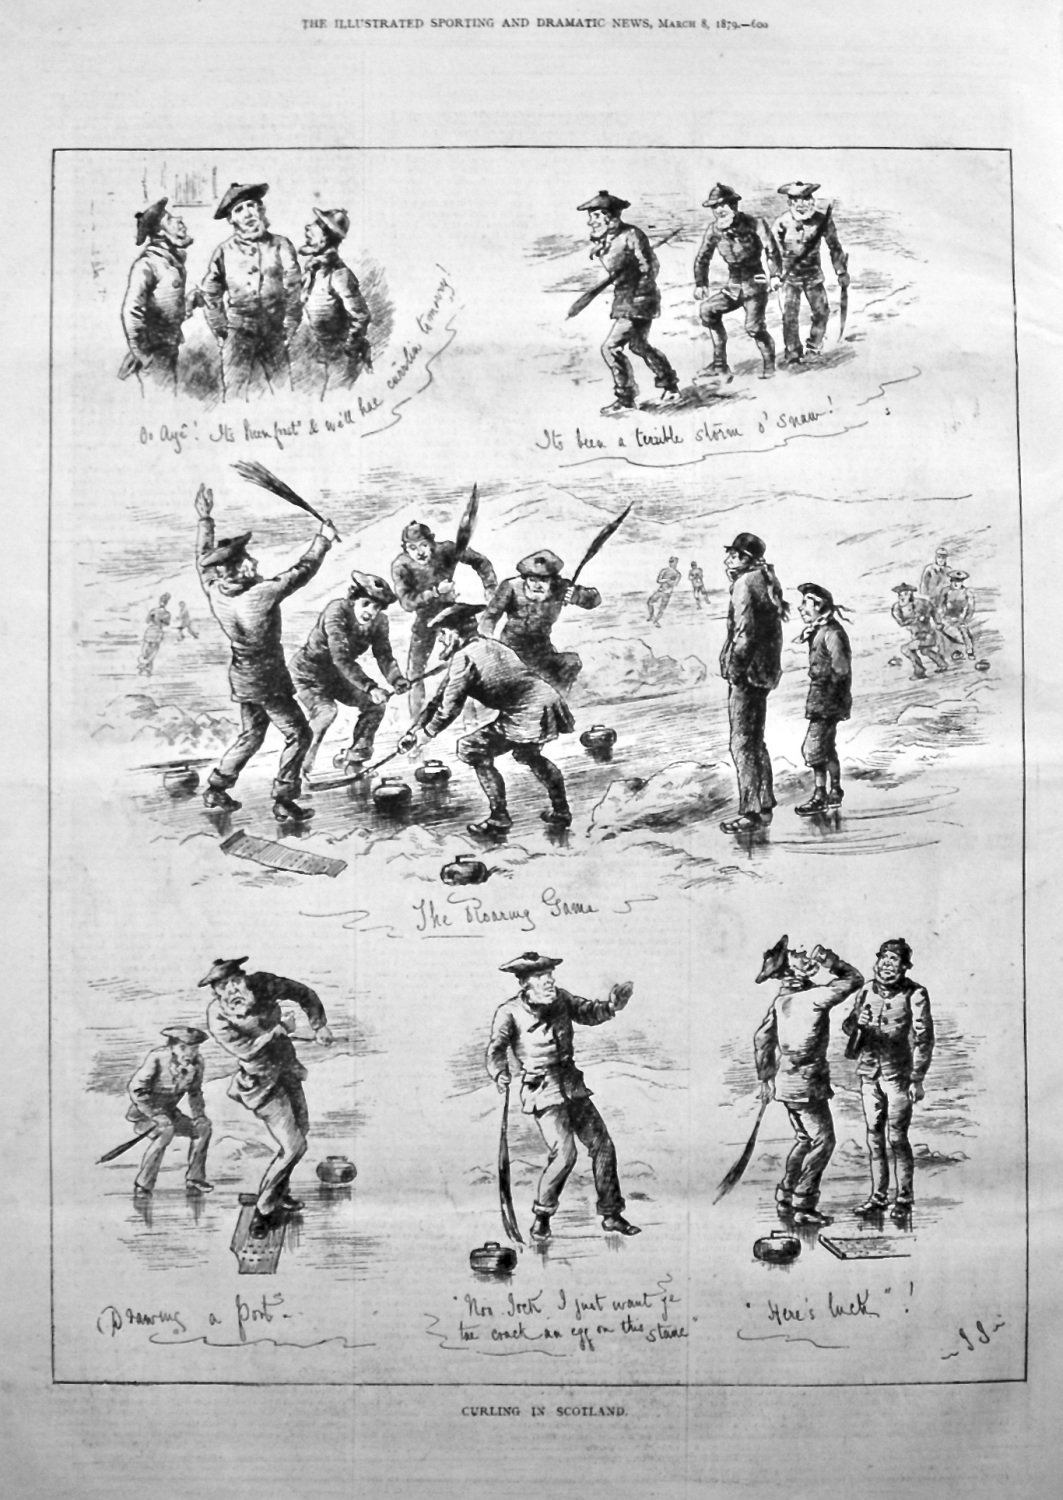 Curling in Scotland. 1879.